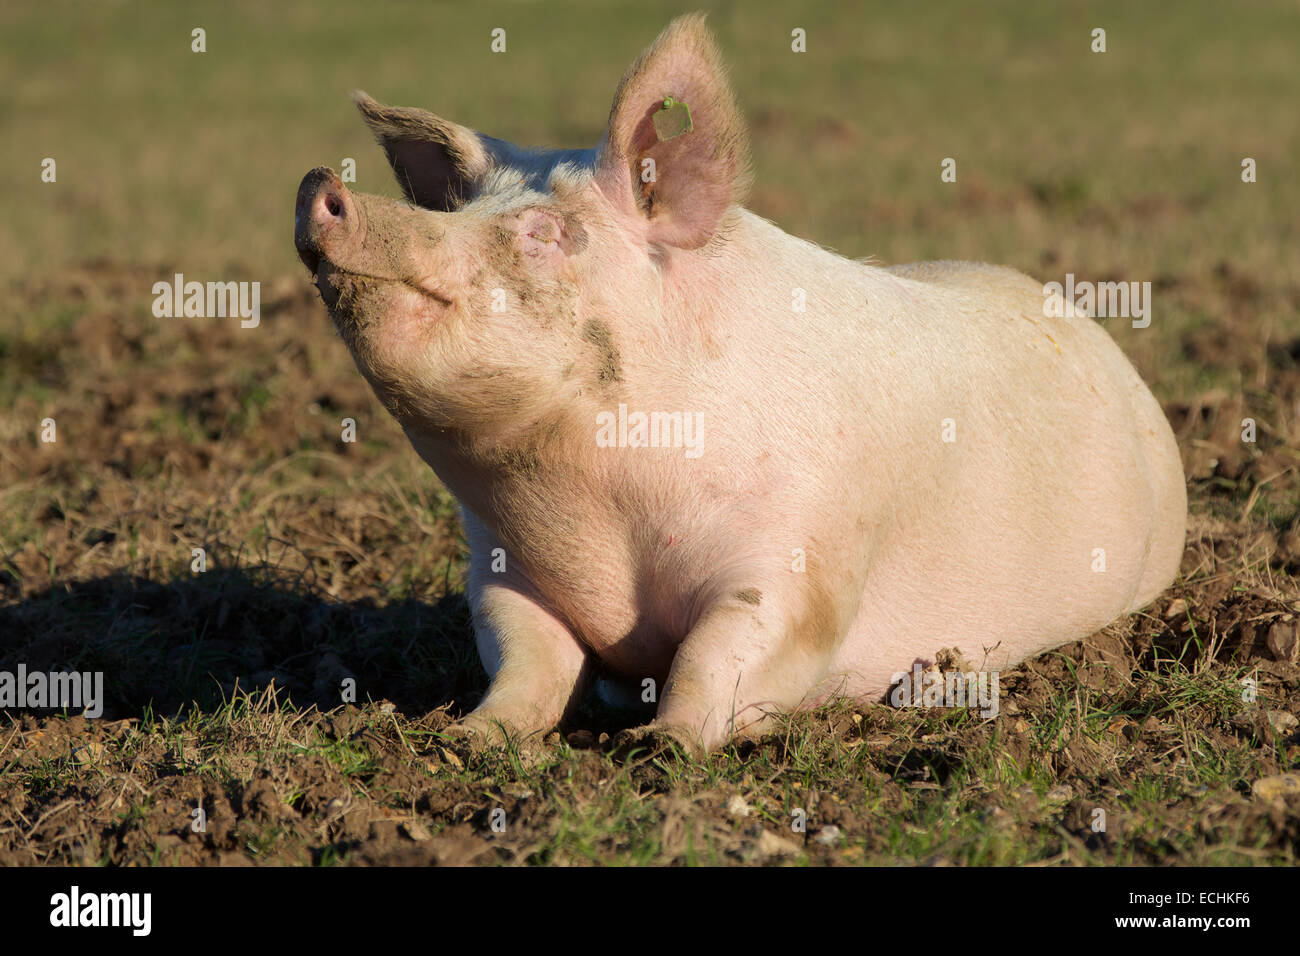 Zufriedenes Schwein. Einsamer rosa Schwein schwelgen in einem schlammigen Feld. Kopf und Nase in die Luft unter der Sonne. Stockfoto